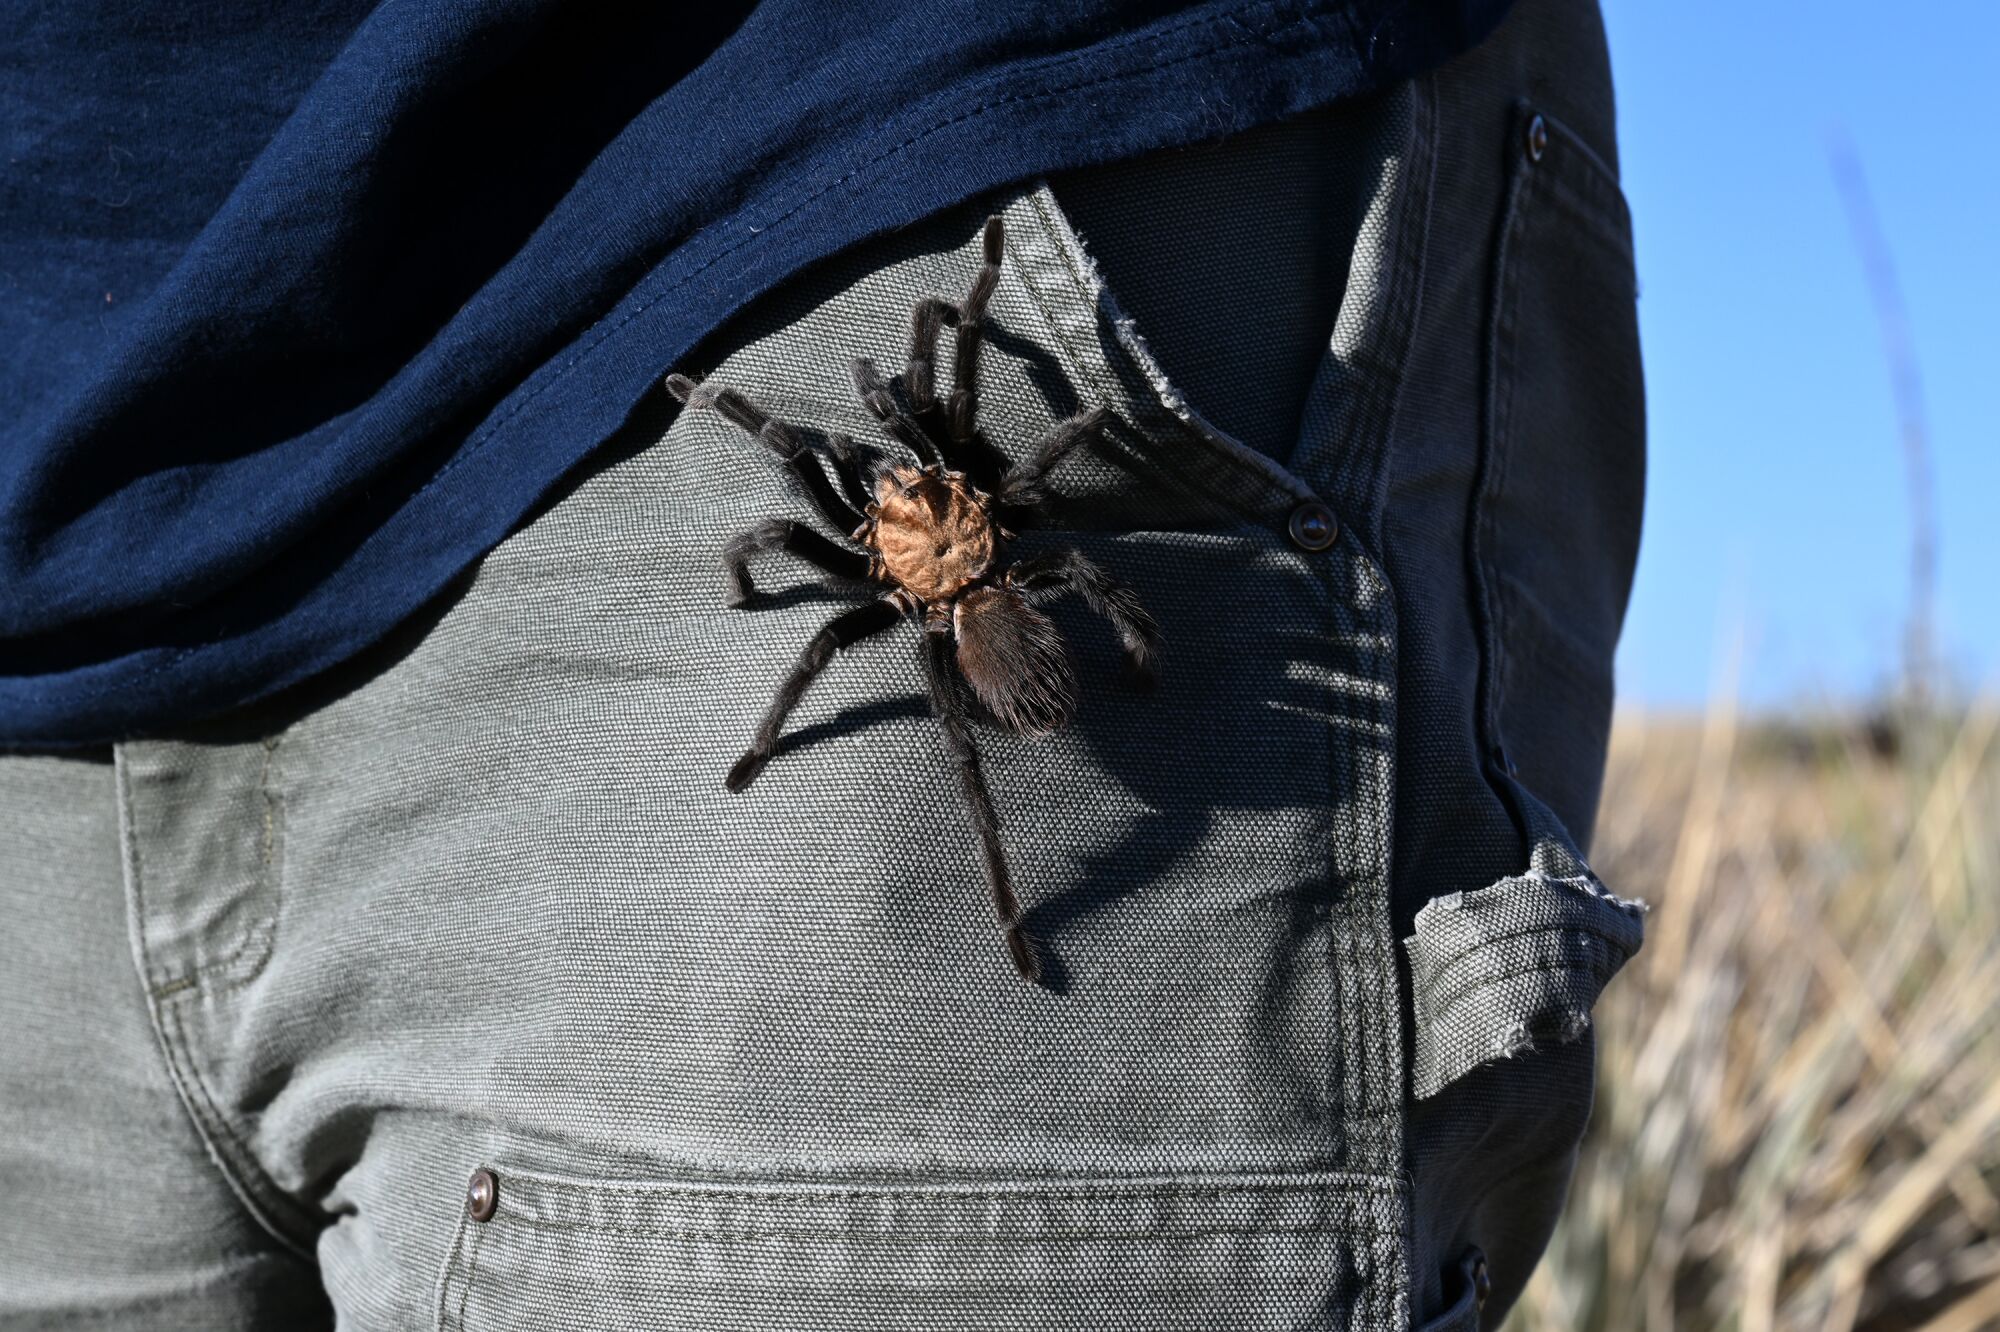 Bir erkek tarantula, Rich Reading'in pantolonunu tarıyor